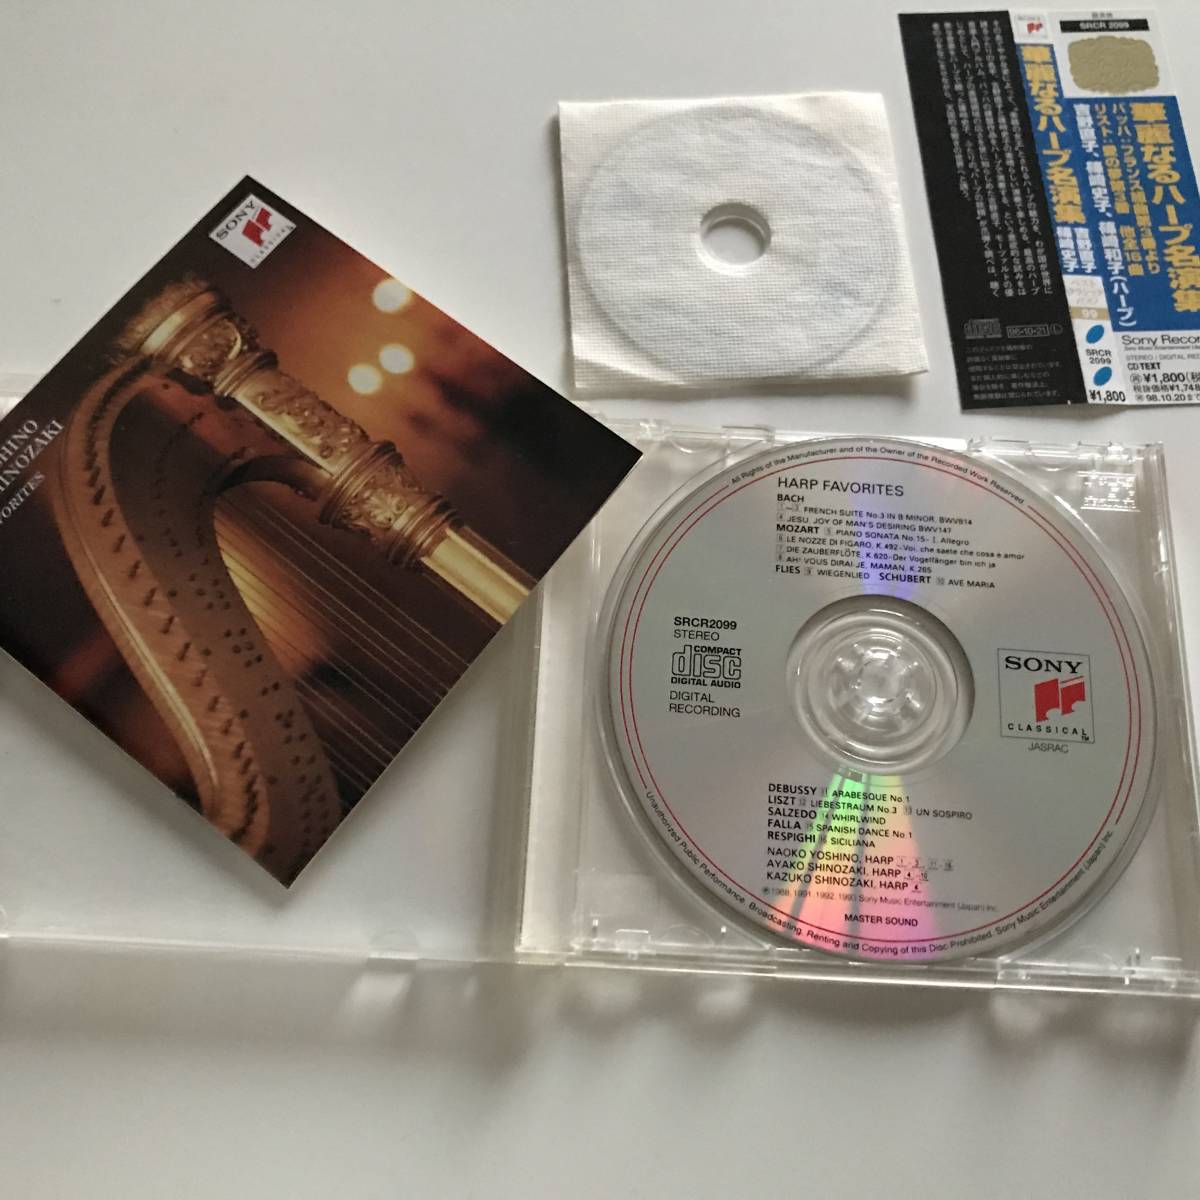 中古CD 初回特典8cmCD付属 華麗なるハープ名演集 Harp Favorites 吉野直子 篠崎史子 SRCR 2099 ベスト・ヒーリング・メロディー